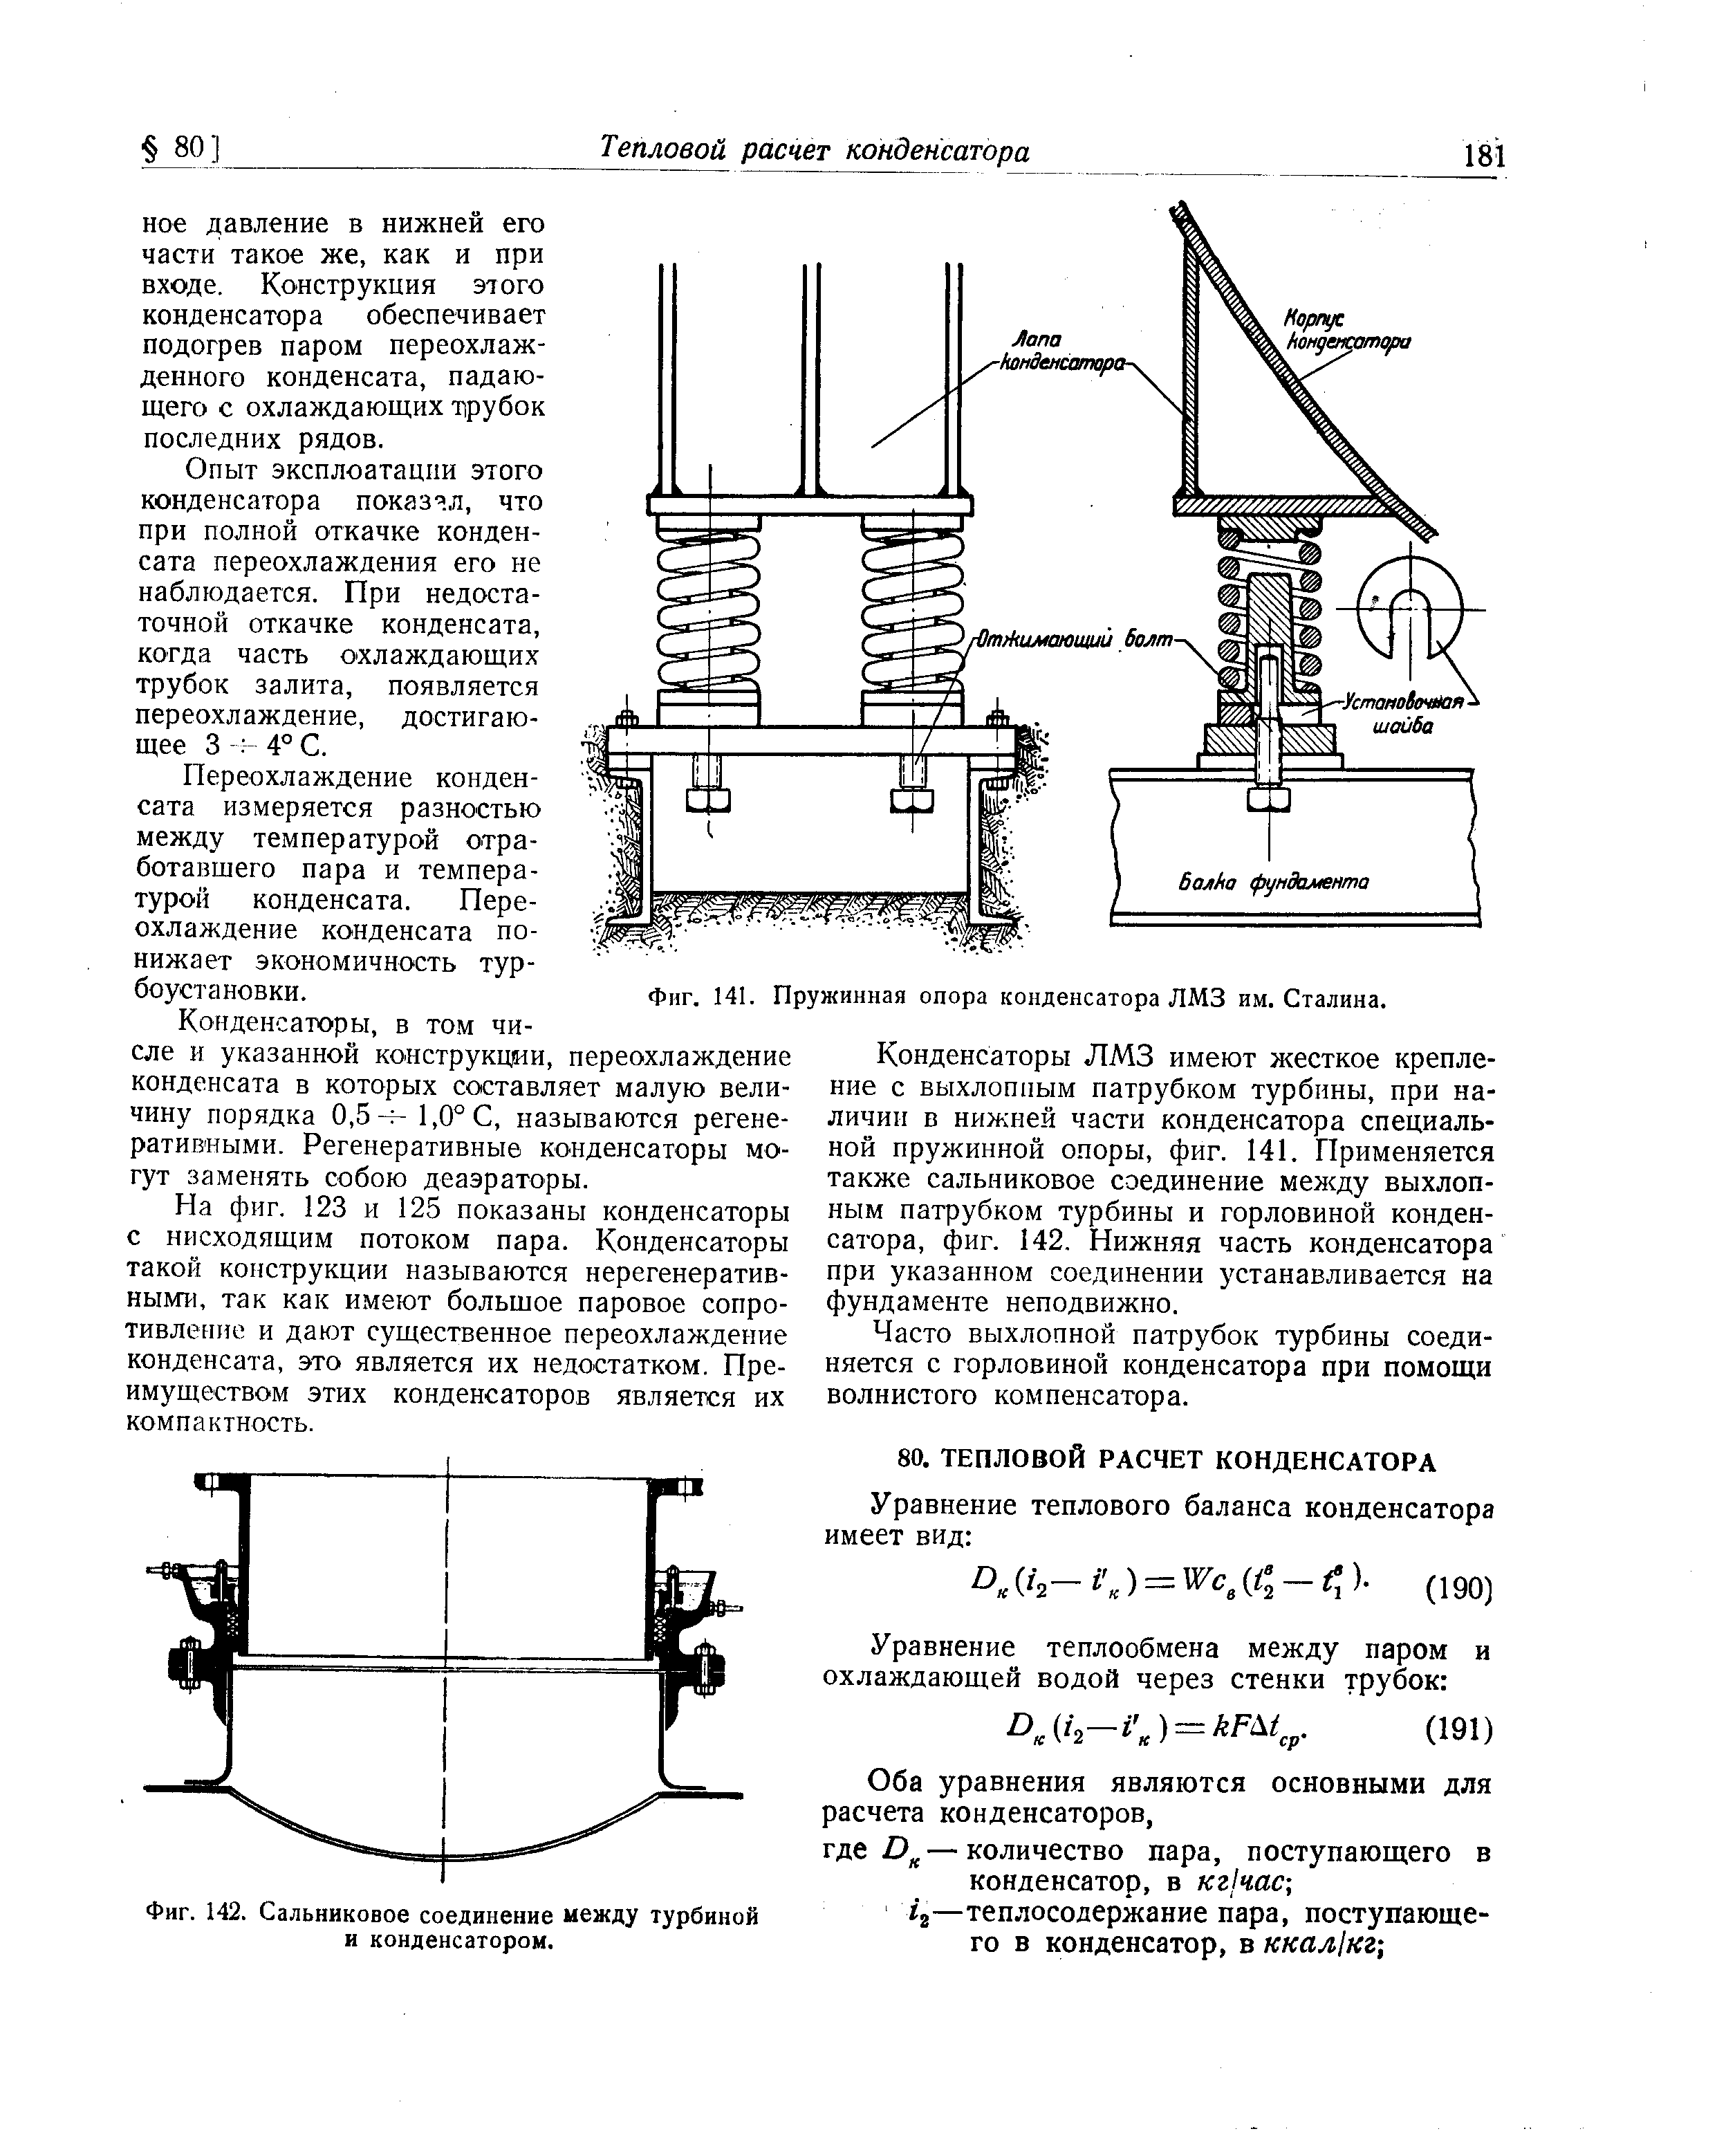 Фиг. 142. Сальниковое соединение между турбиной и конденсатором.
